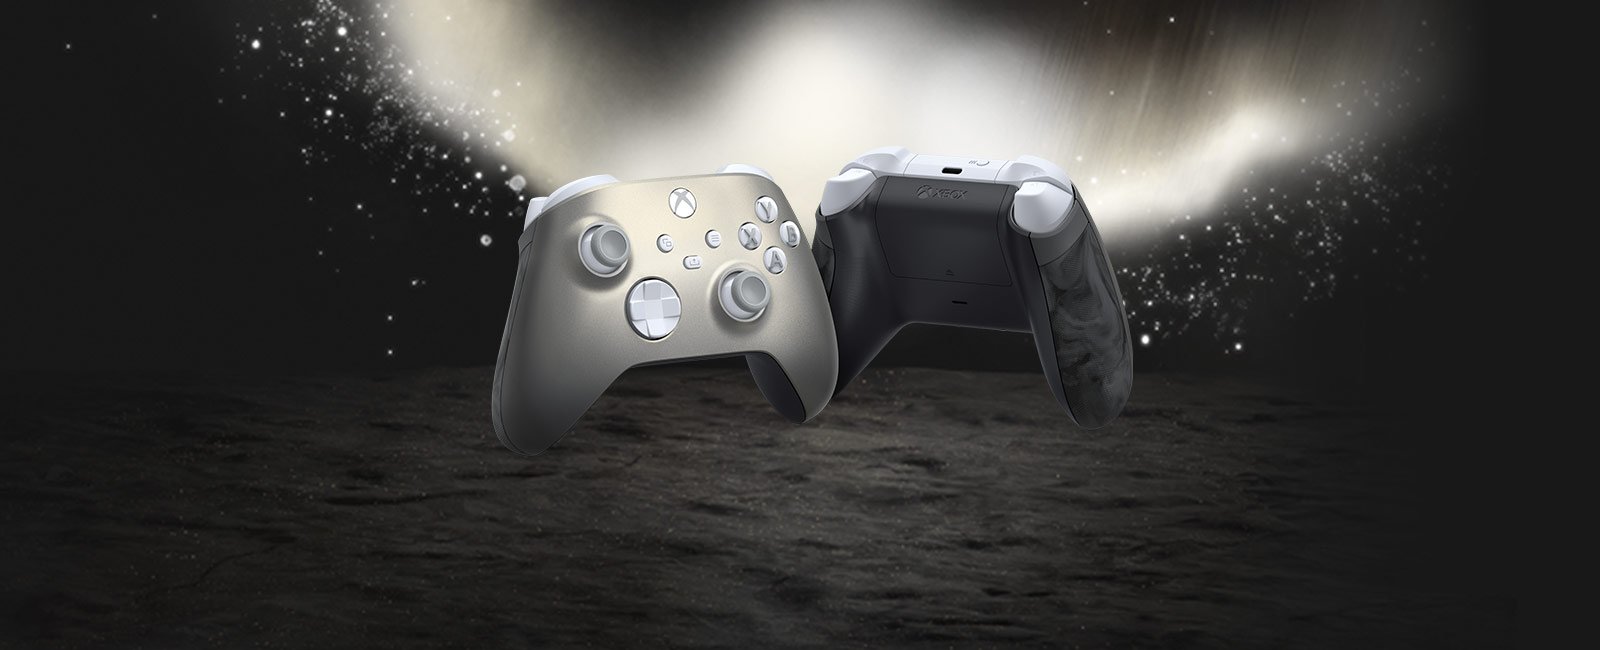 Новые фото геймпада Xbox Lunar Shift, он еще официально не представлен